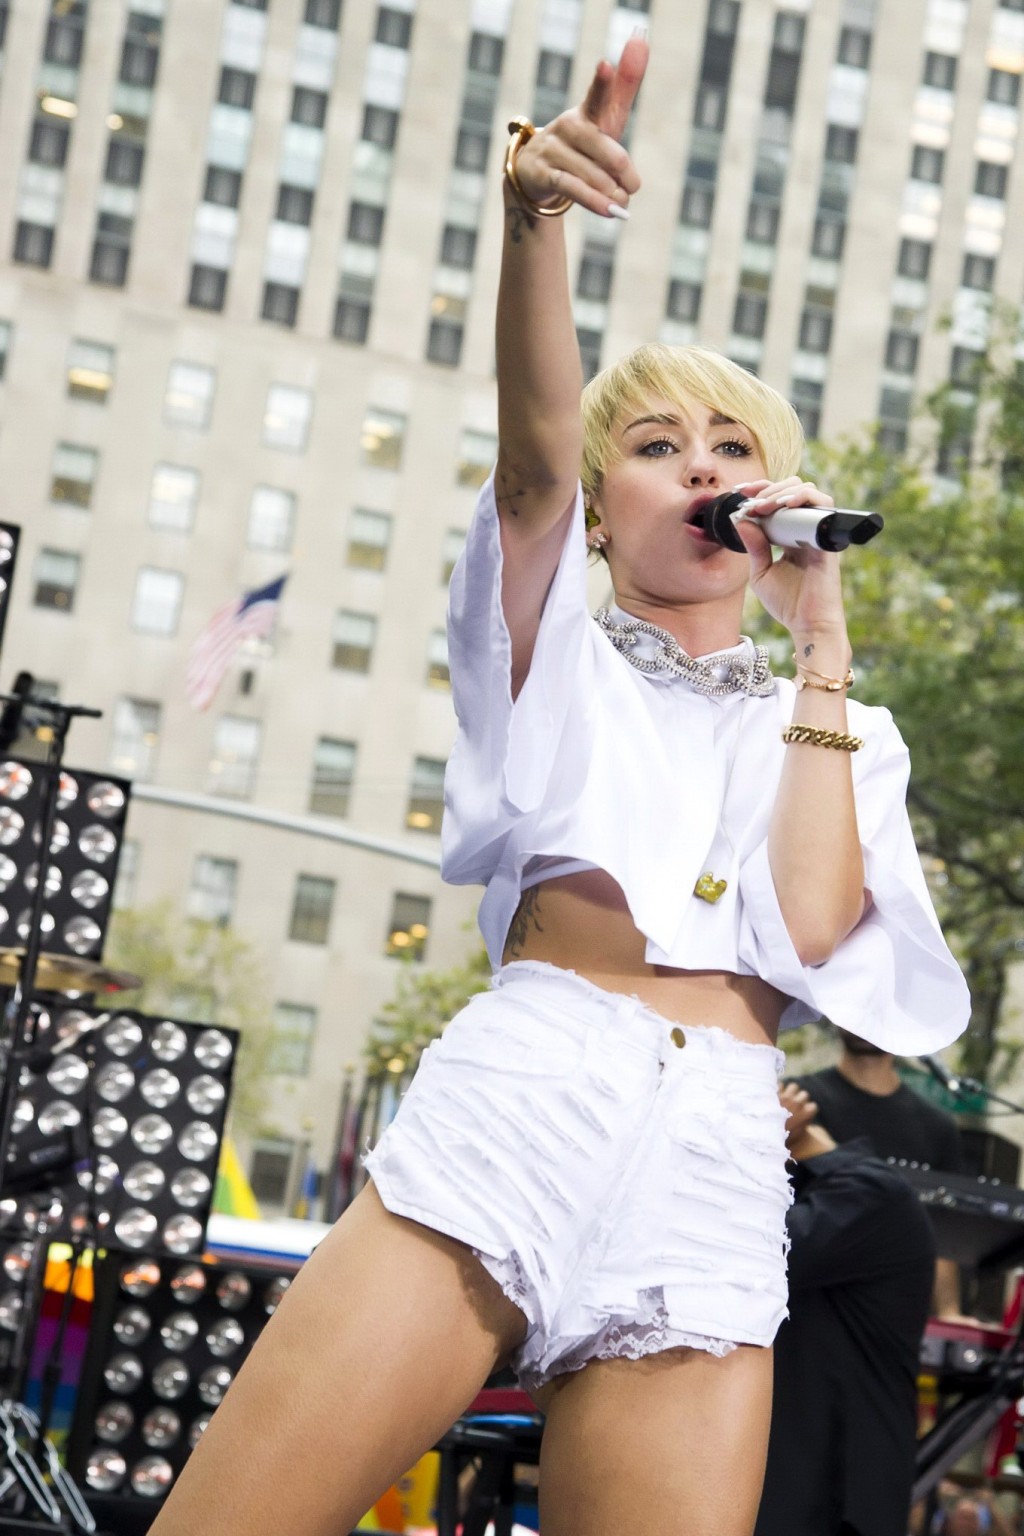 Miley cyrus zeigt ihren arsch, beine und höschen während der aufführung in ripped hot
 #75216336